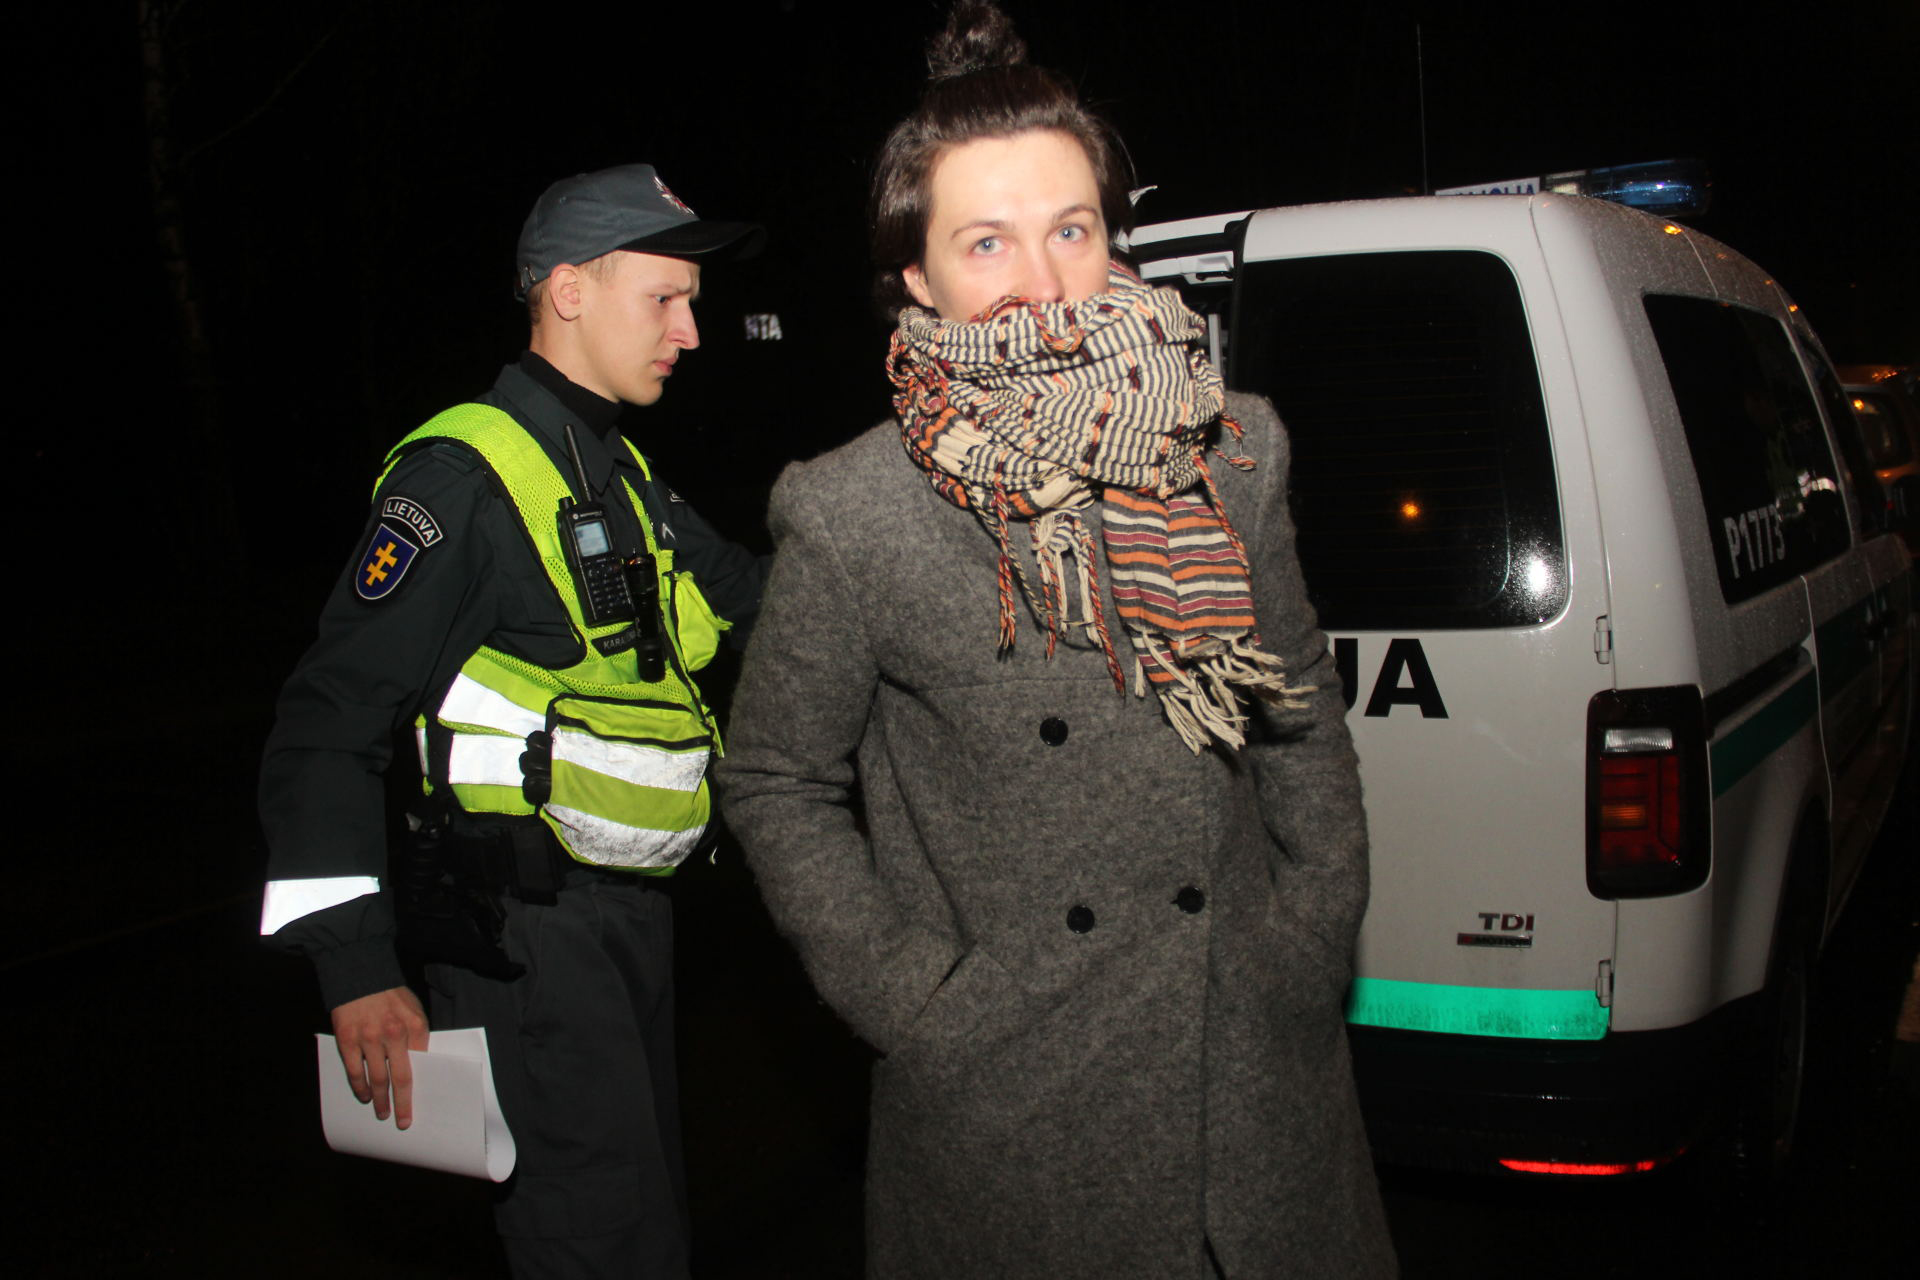 Prieš daugiau nei dvi savaites policijos pareigūnams įkliuvusi dainininkė Simona Jakubėnaitė turės stoti prieš teismą. Ji automobilį vairavo būdama neblaivi